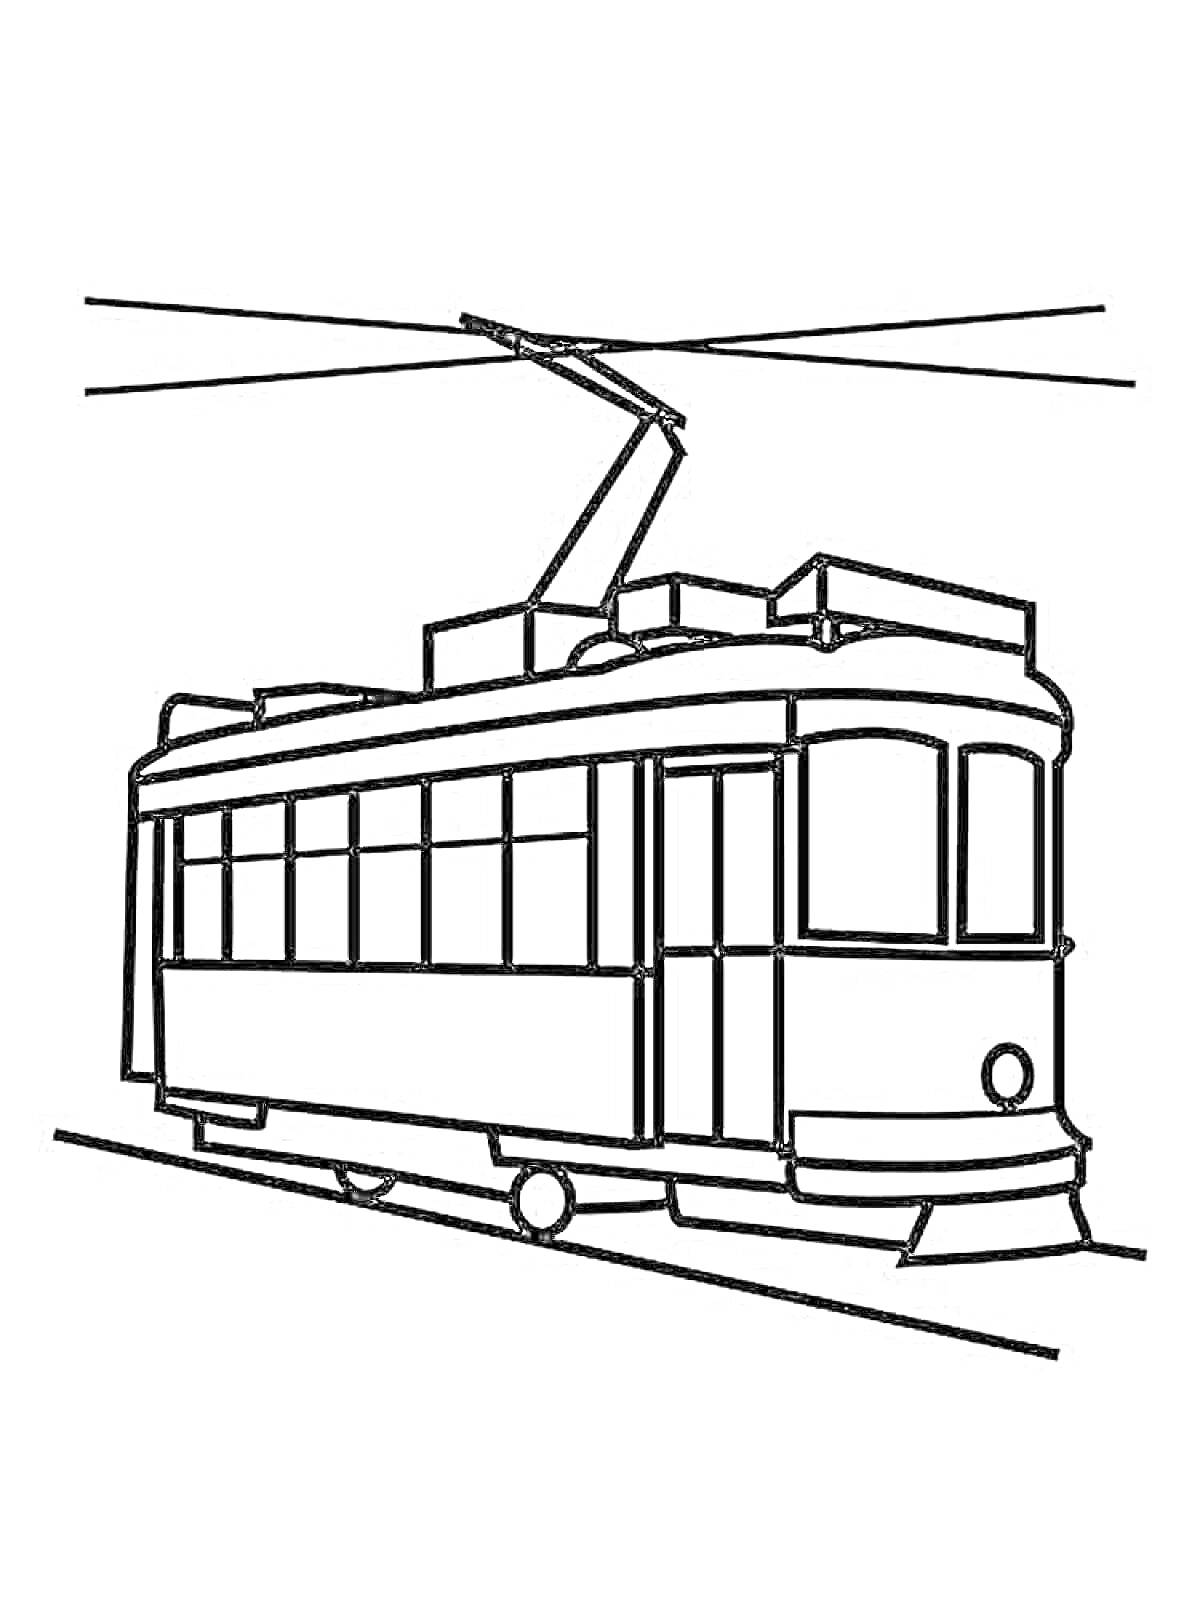 Трамвай с боковым видом, контактными проводами и пантографом